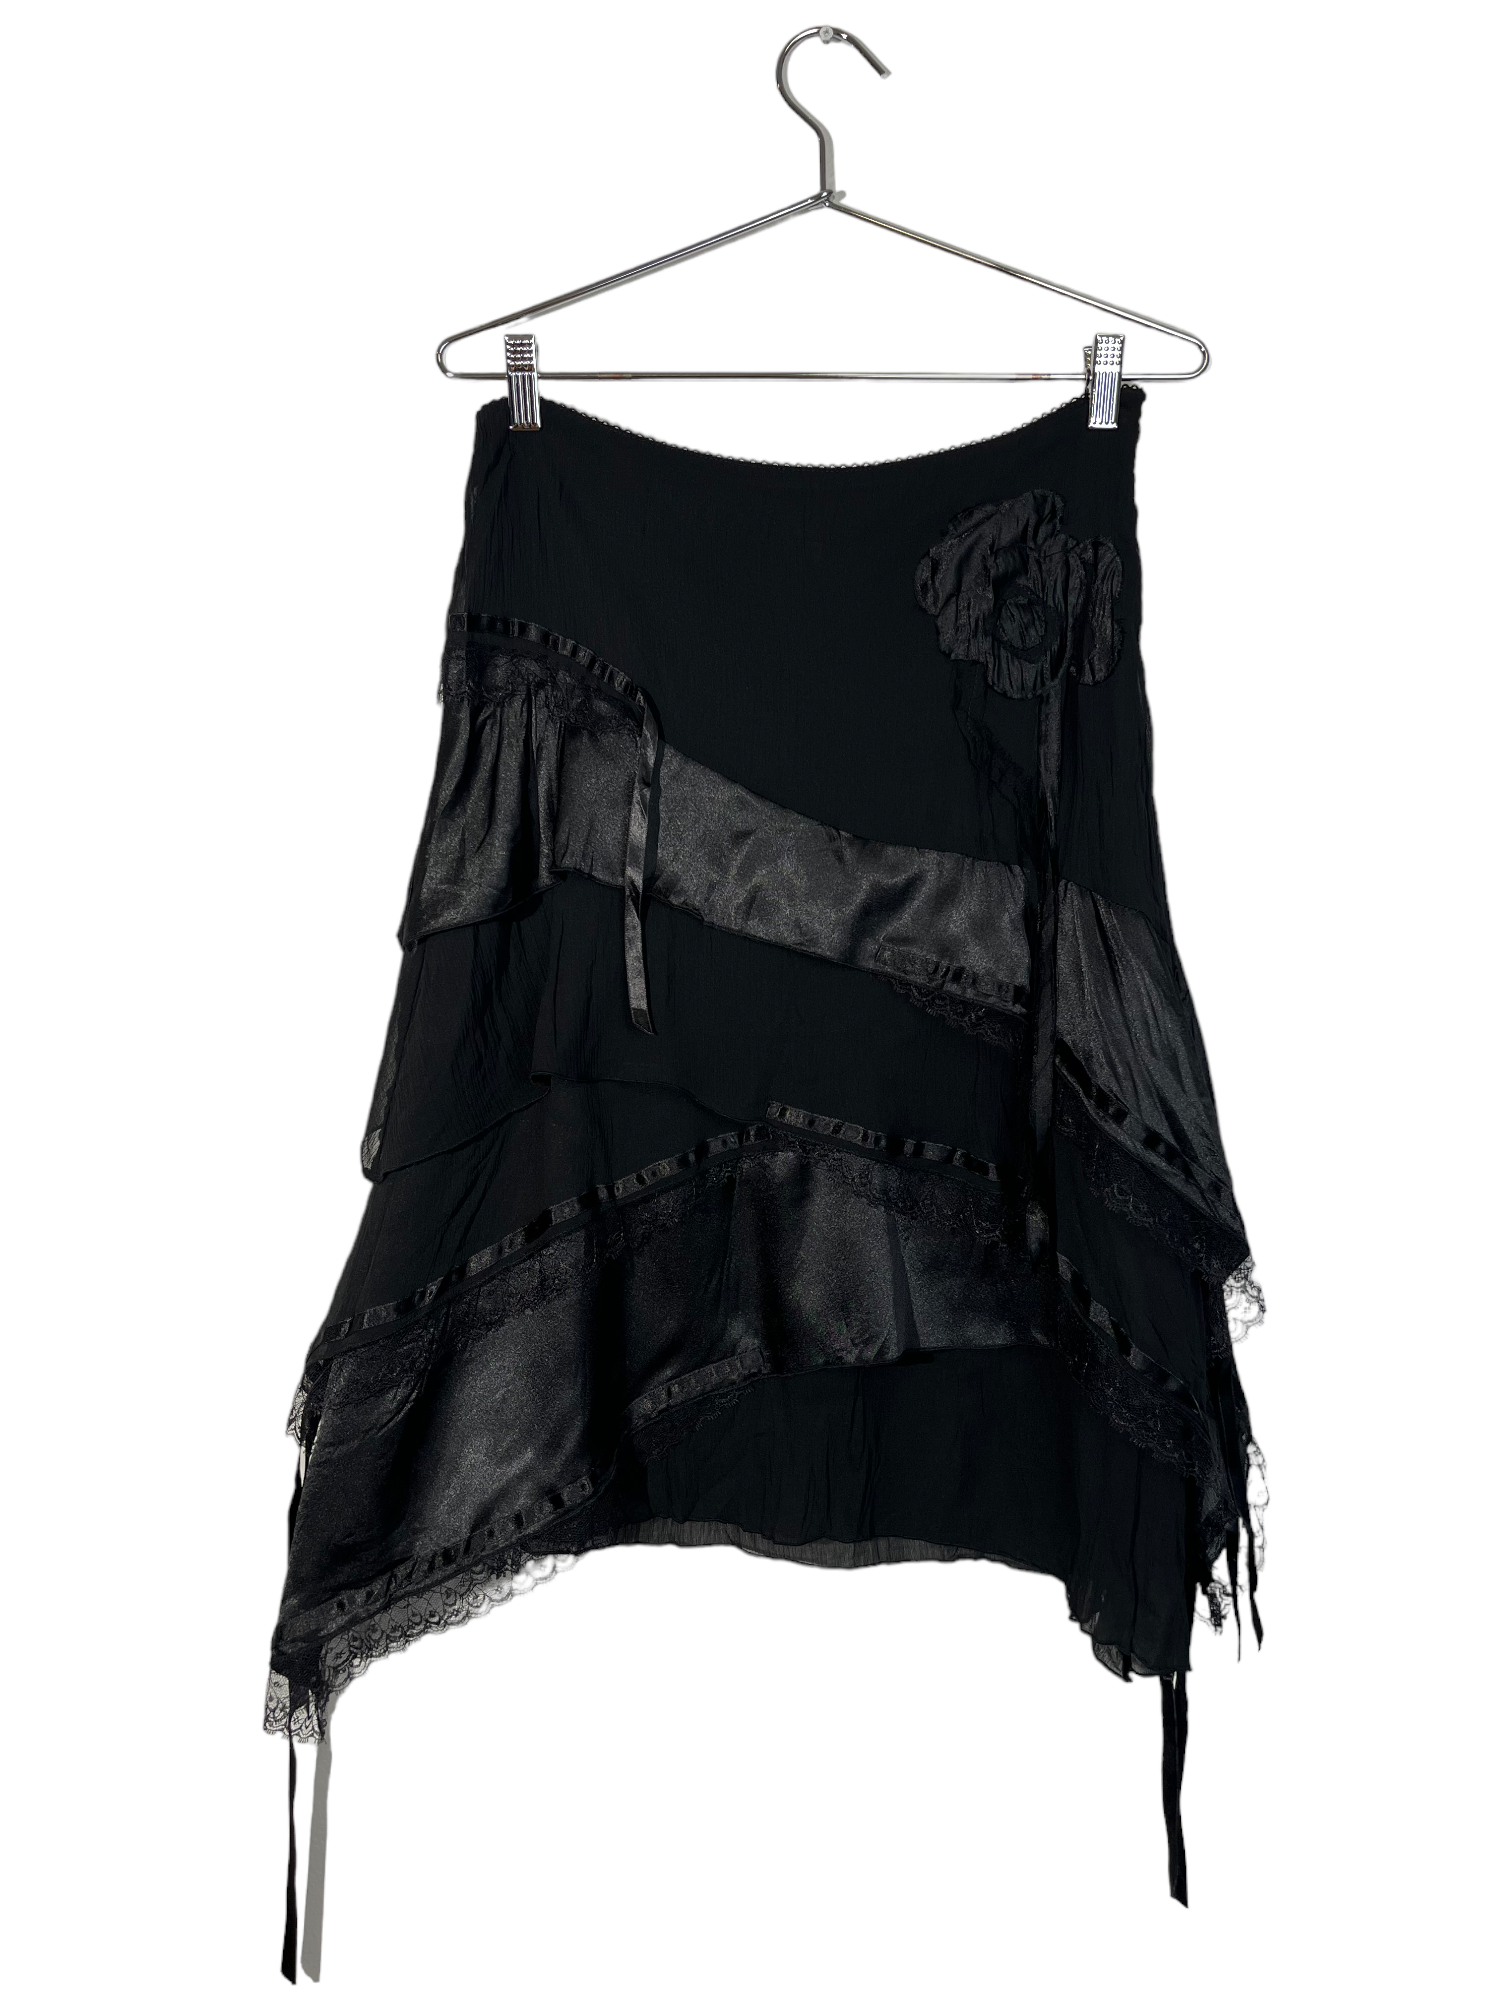 CNB Multi Textured Black Midi Skirt